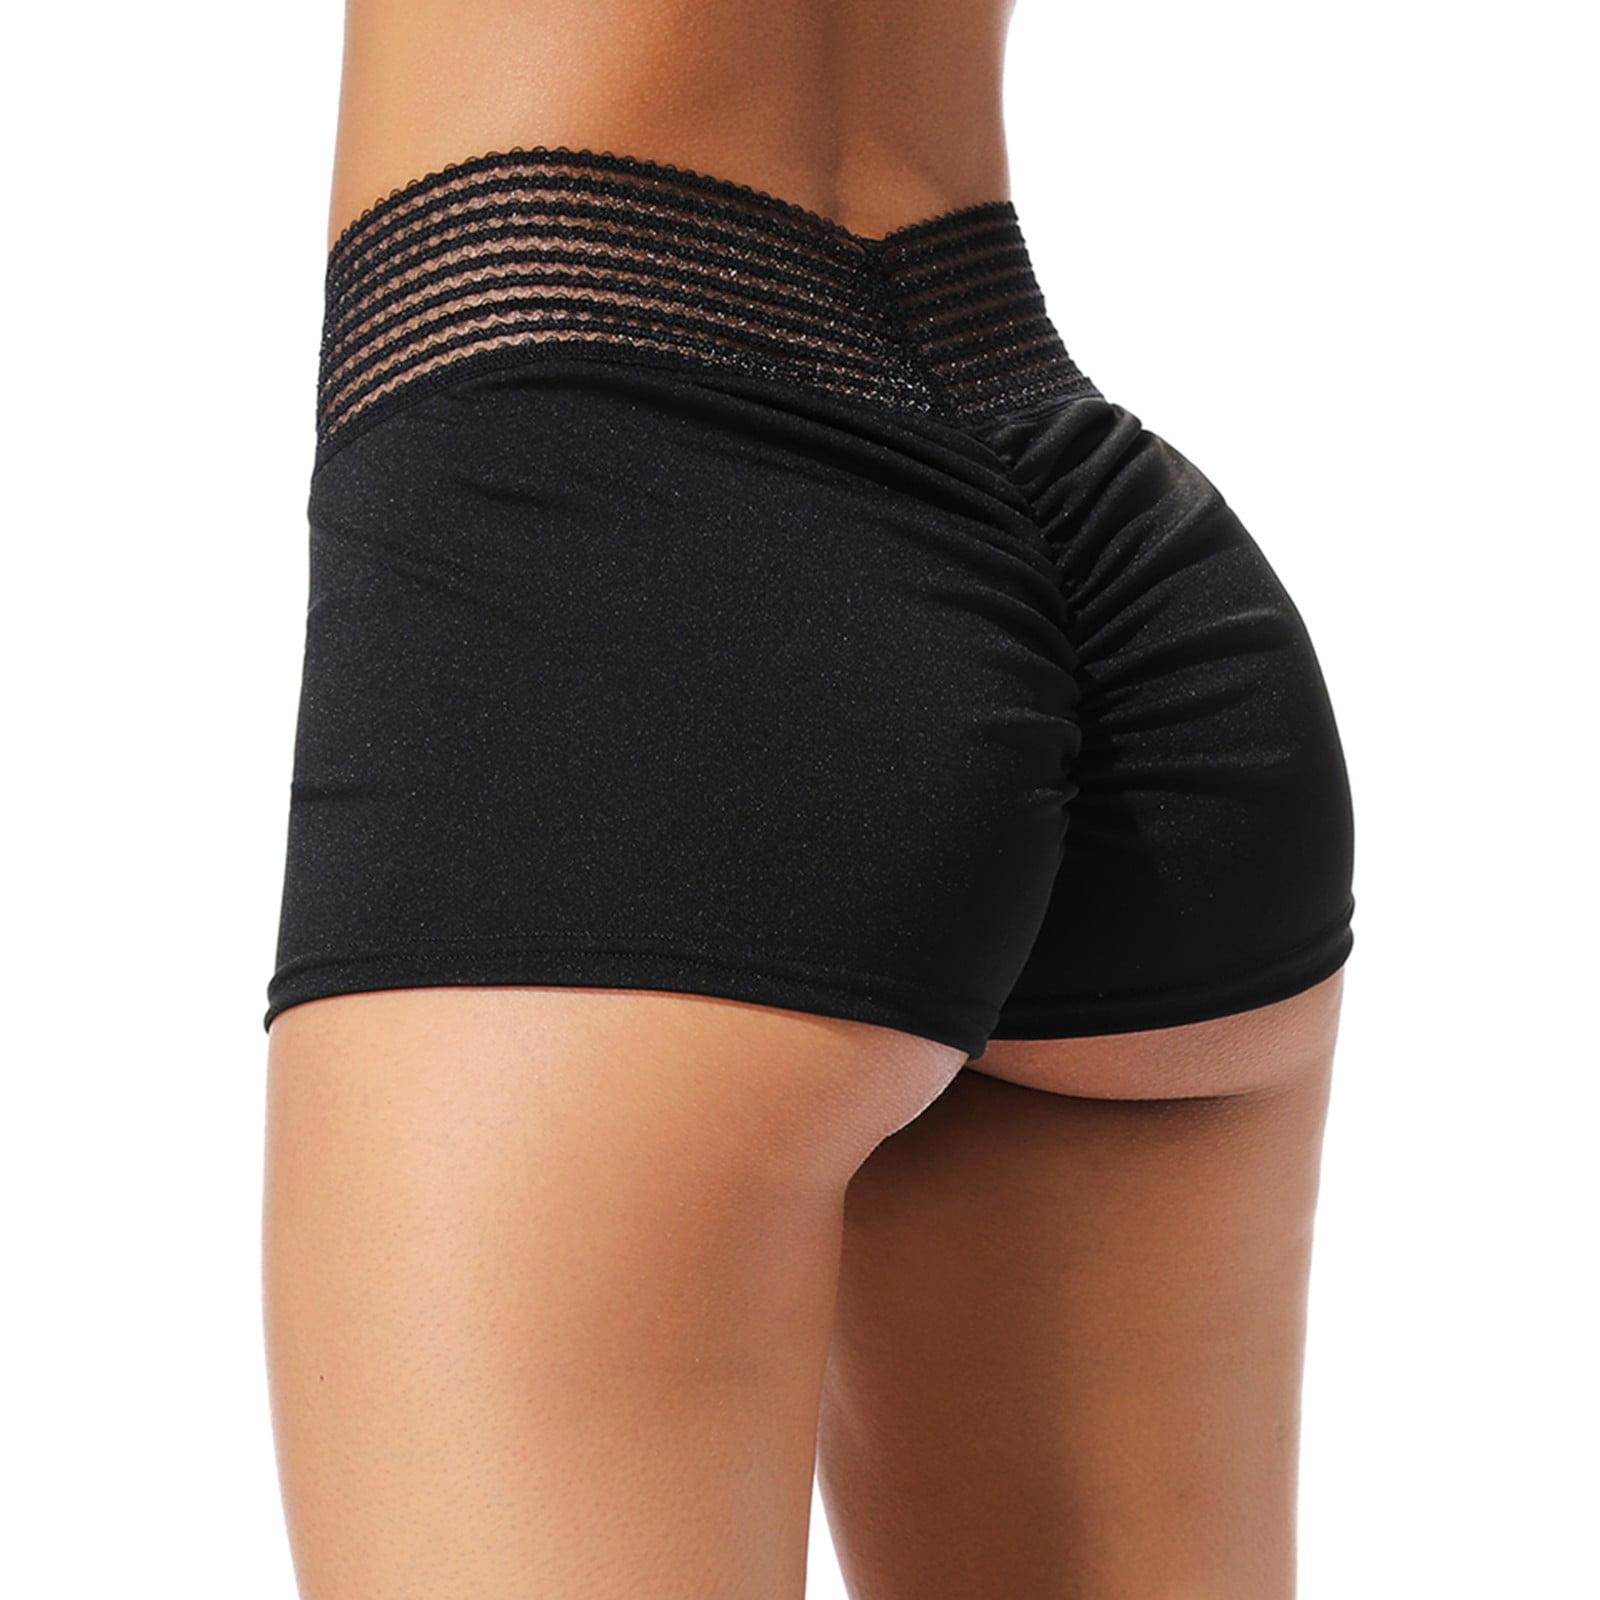 Fittoo Fittoo Women Sexy High Waisted Shorts Sport Scrunch Butt Pants Shorts Push Up Butt Lift 